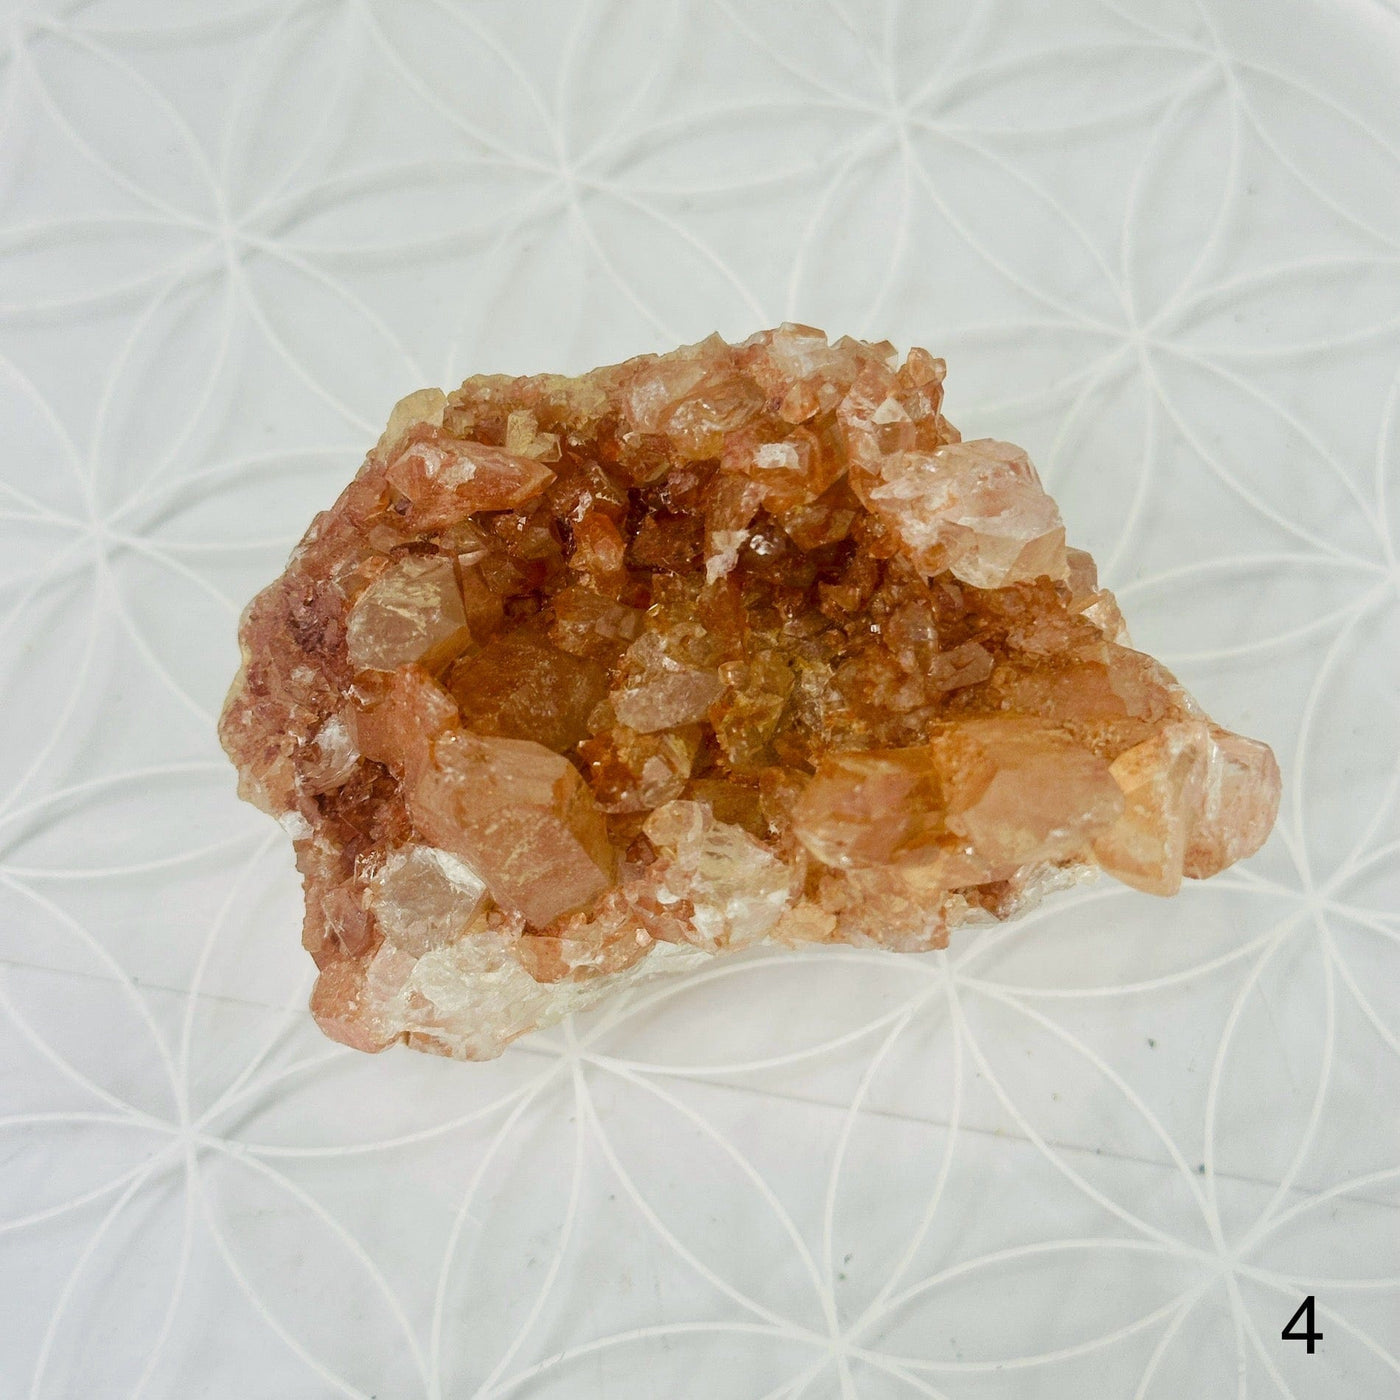 Tangerine Quartz Cluster - Crystal Cluster - YOU CHOOSE variant 4 labeled